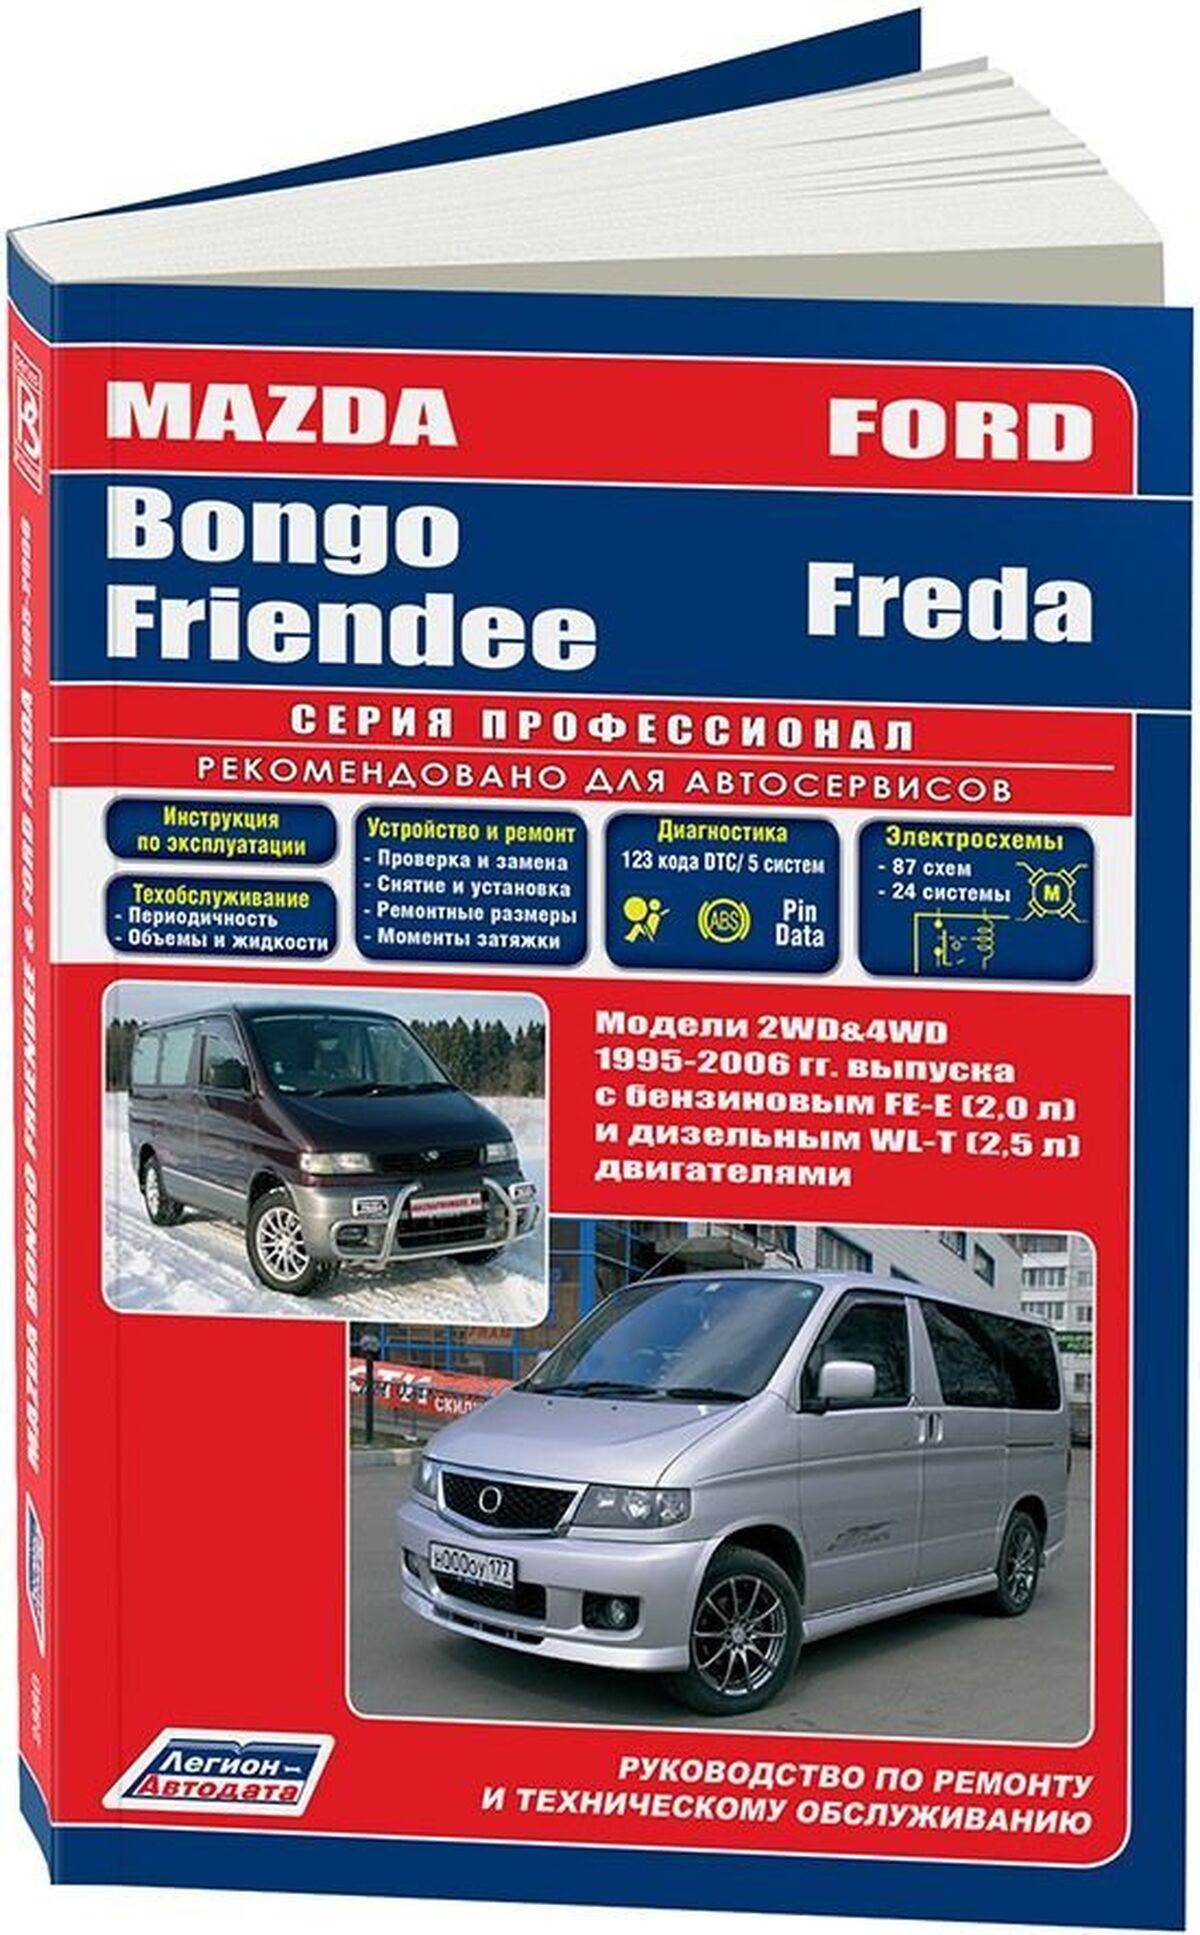 Книга: MAZDA BONGO FRIENDEE / FORD FREDA (б , д) с 1995 г.в., рем., экспл., то | Легион-Aвтодата